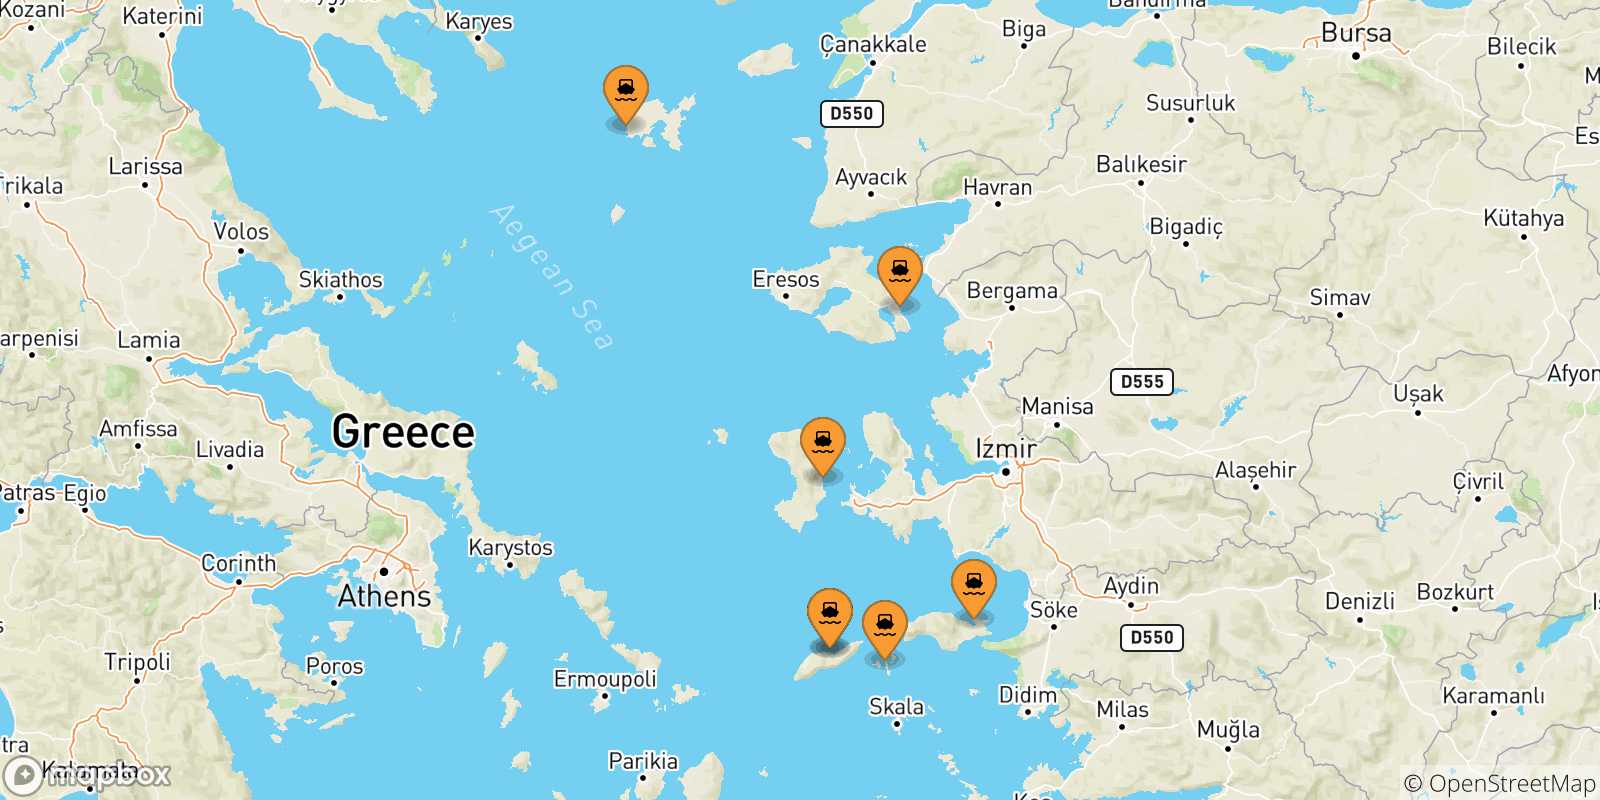 Mappa delle possibili rotte tra le Isole Egeo Nord Orientale e Karlovassi (Samos)